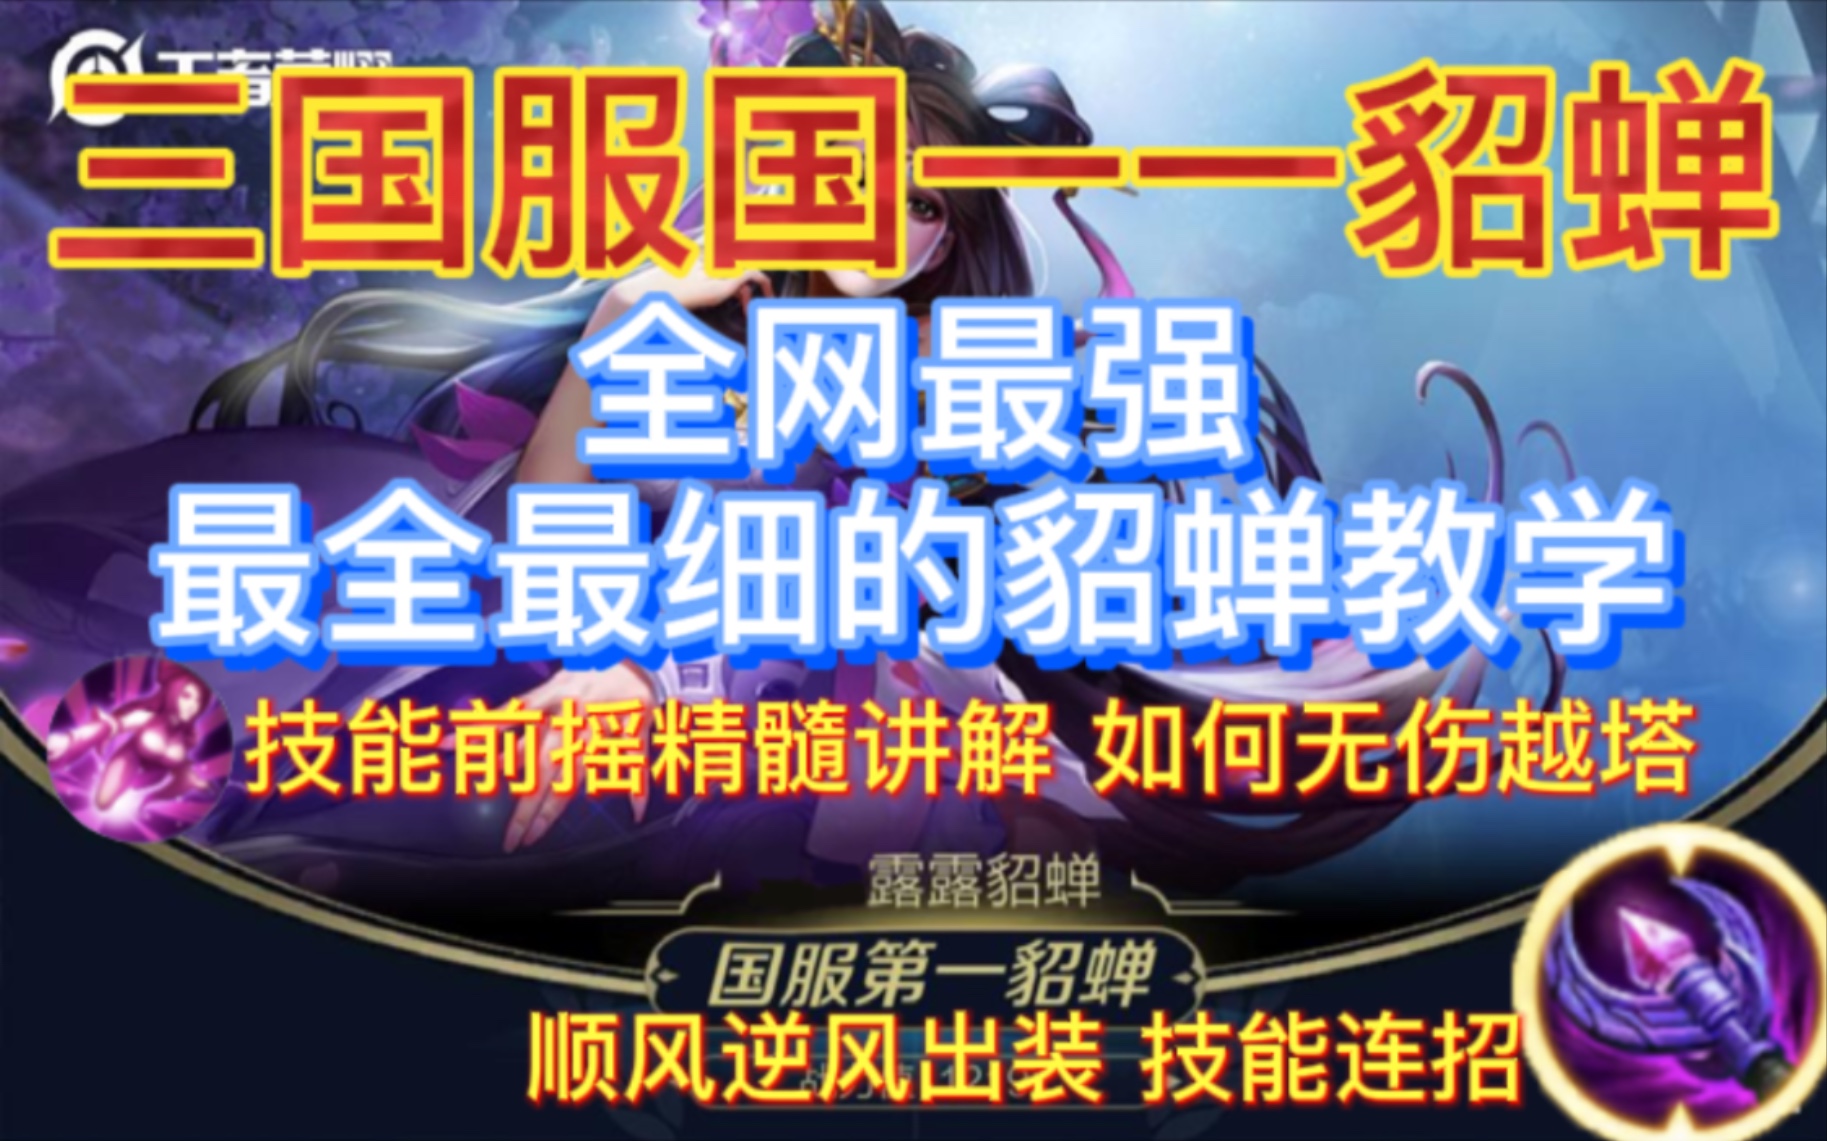 究极神兵原型 - 最终幻想XIV中文维基 - 灰机wiki - 北京嘉闻杰诺网络科技有限公司